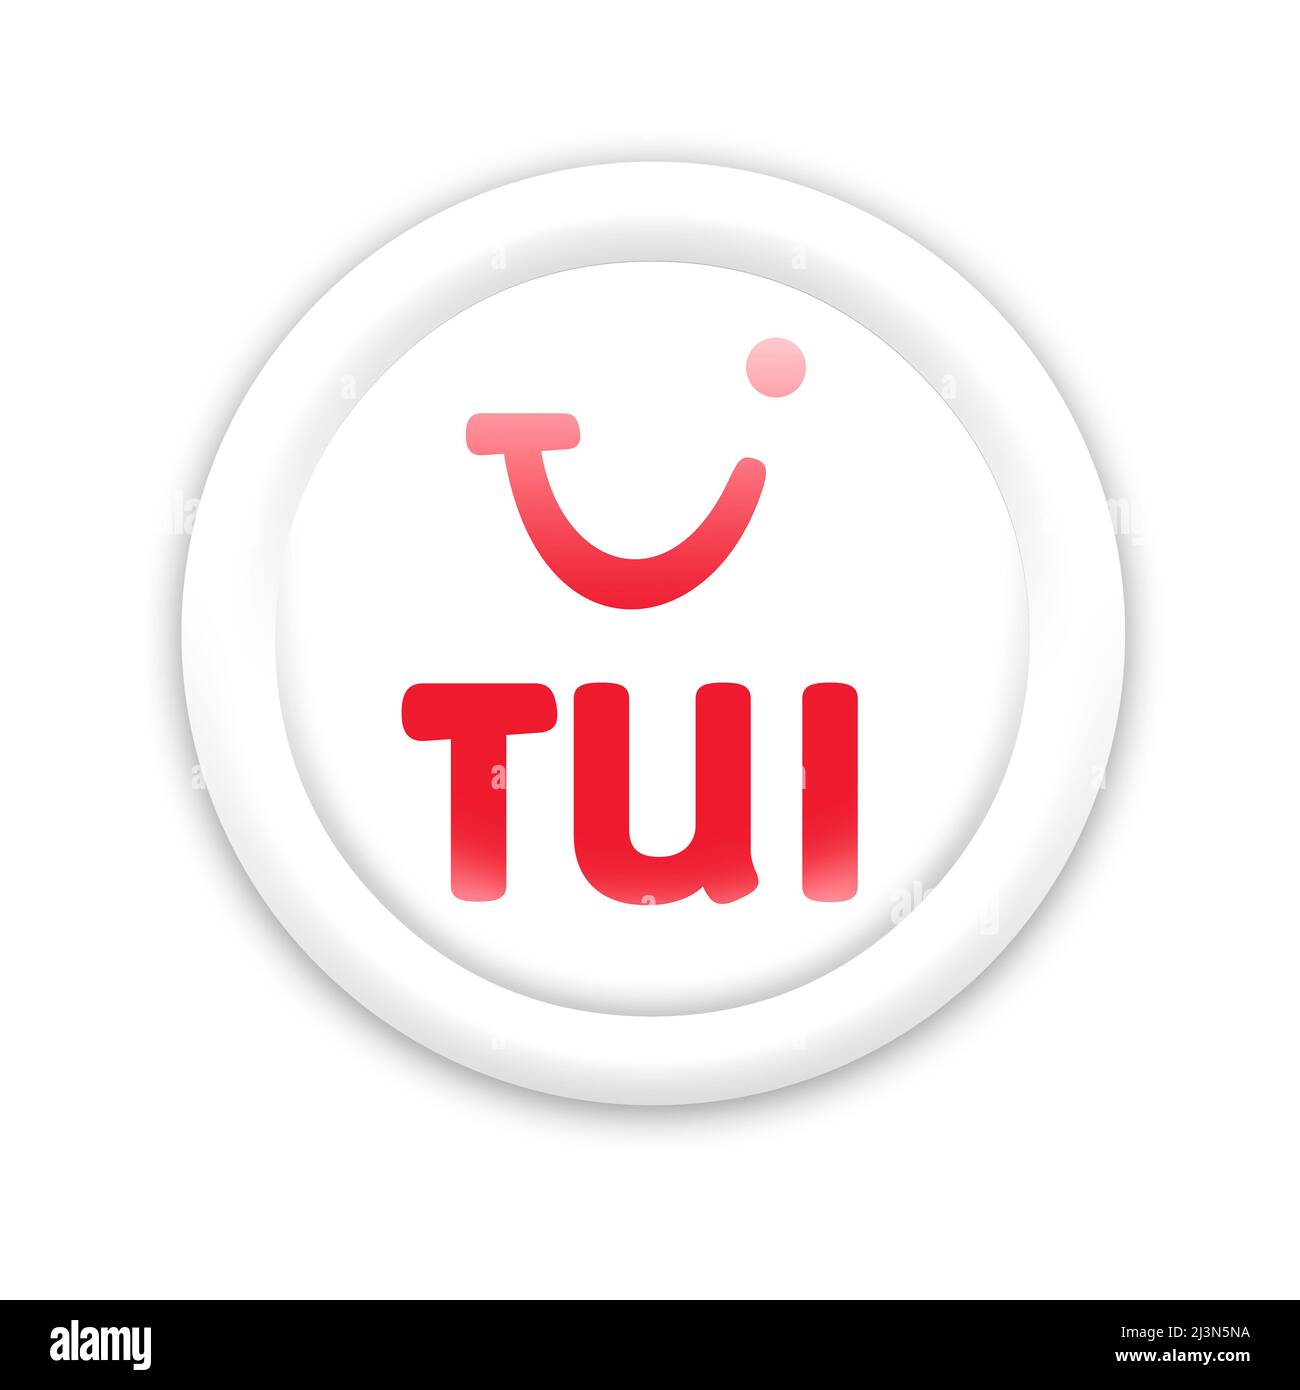 TUI logo Stock Photo